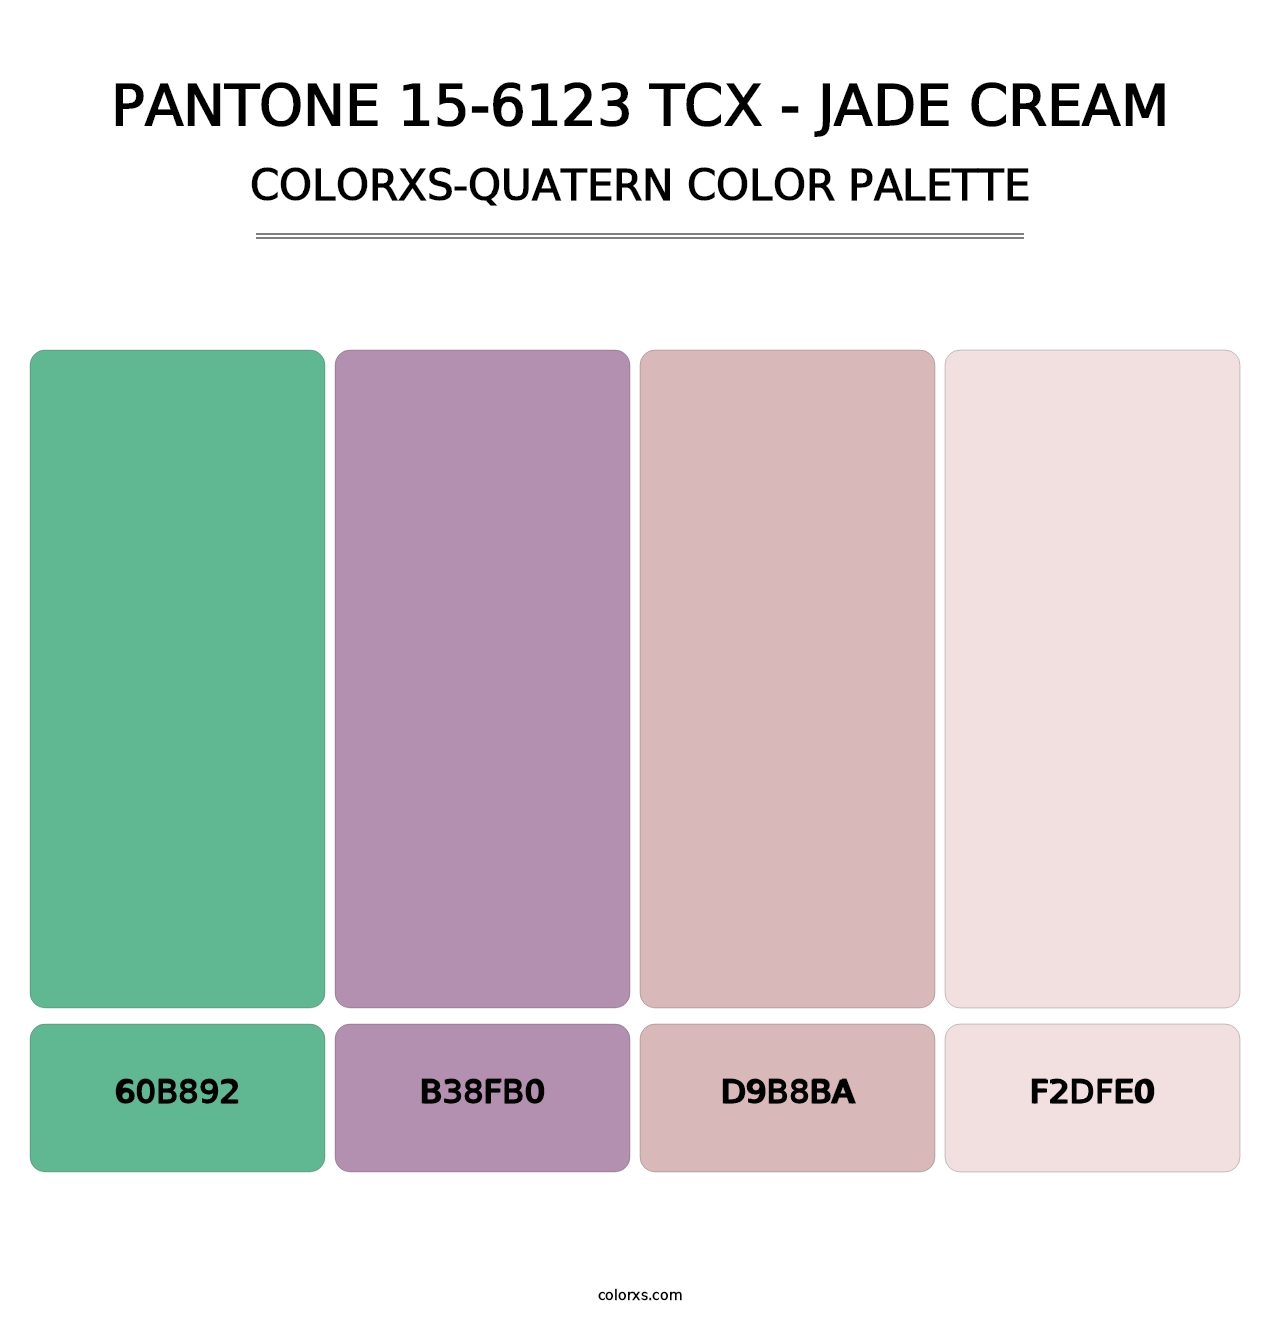 PANTONE 15-6123 TCX - Jade Cream - Colorxs Quatern Palette